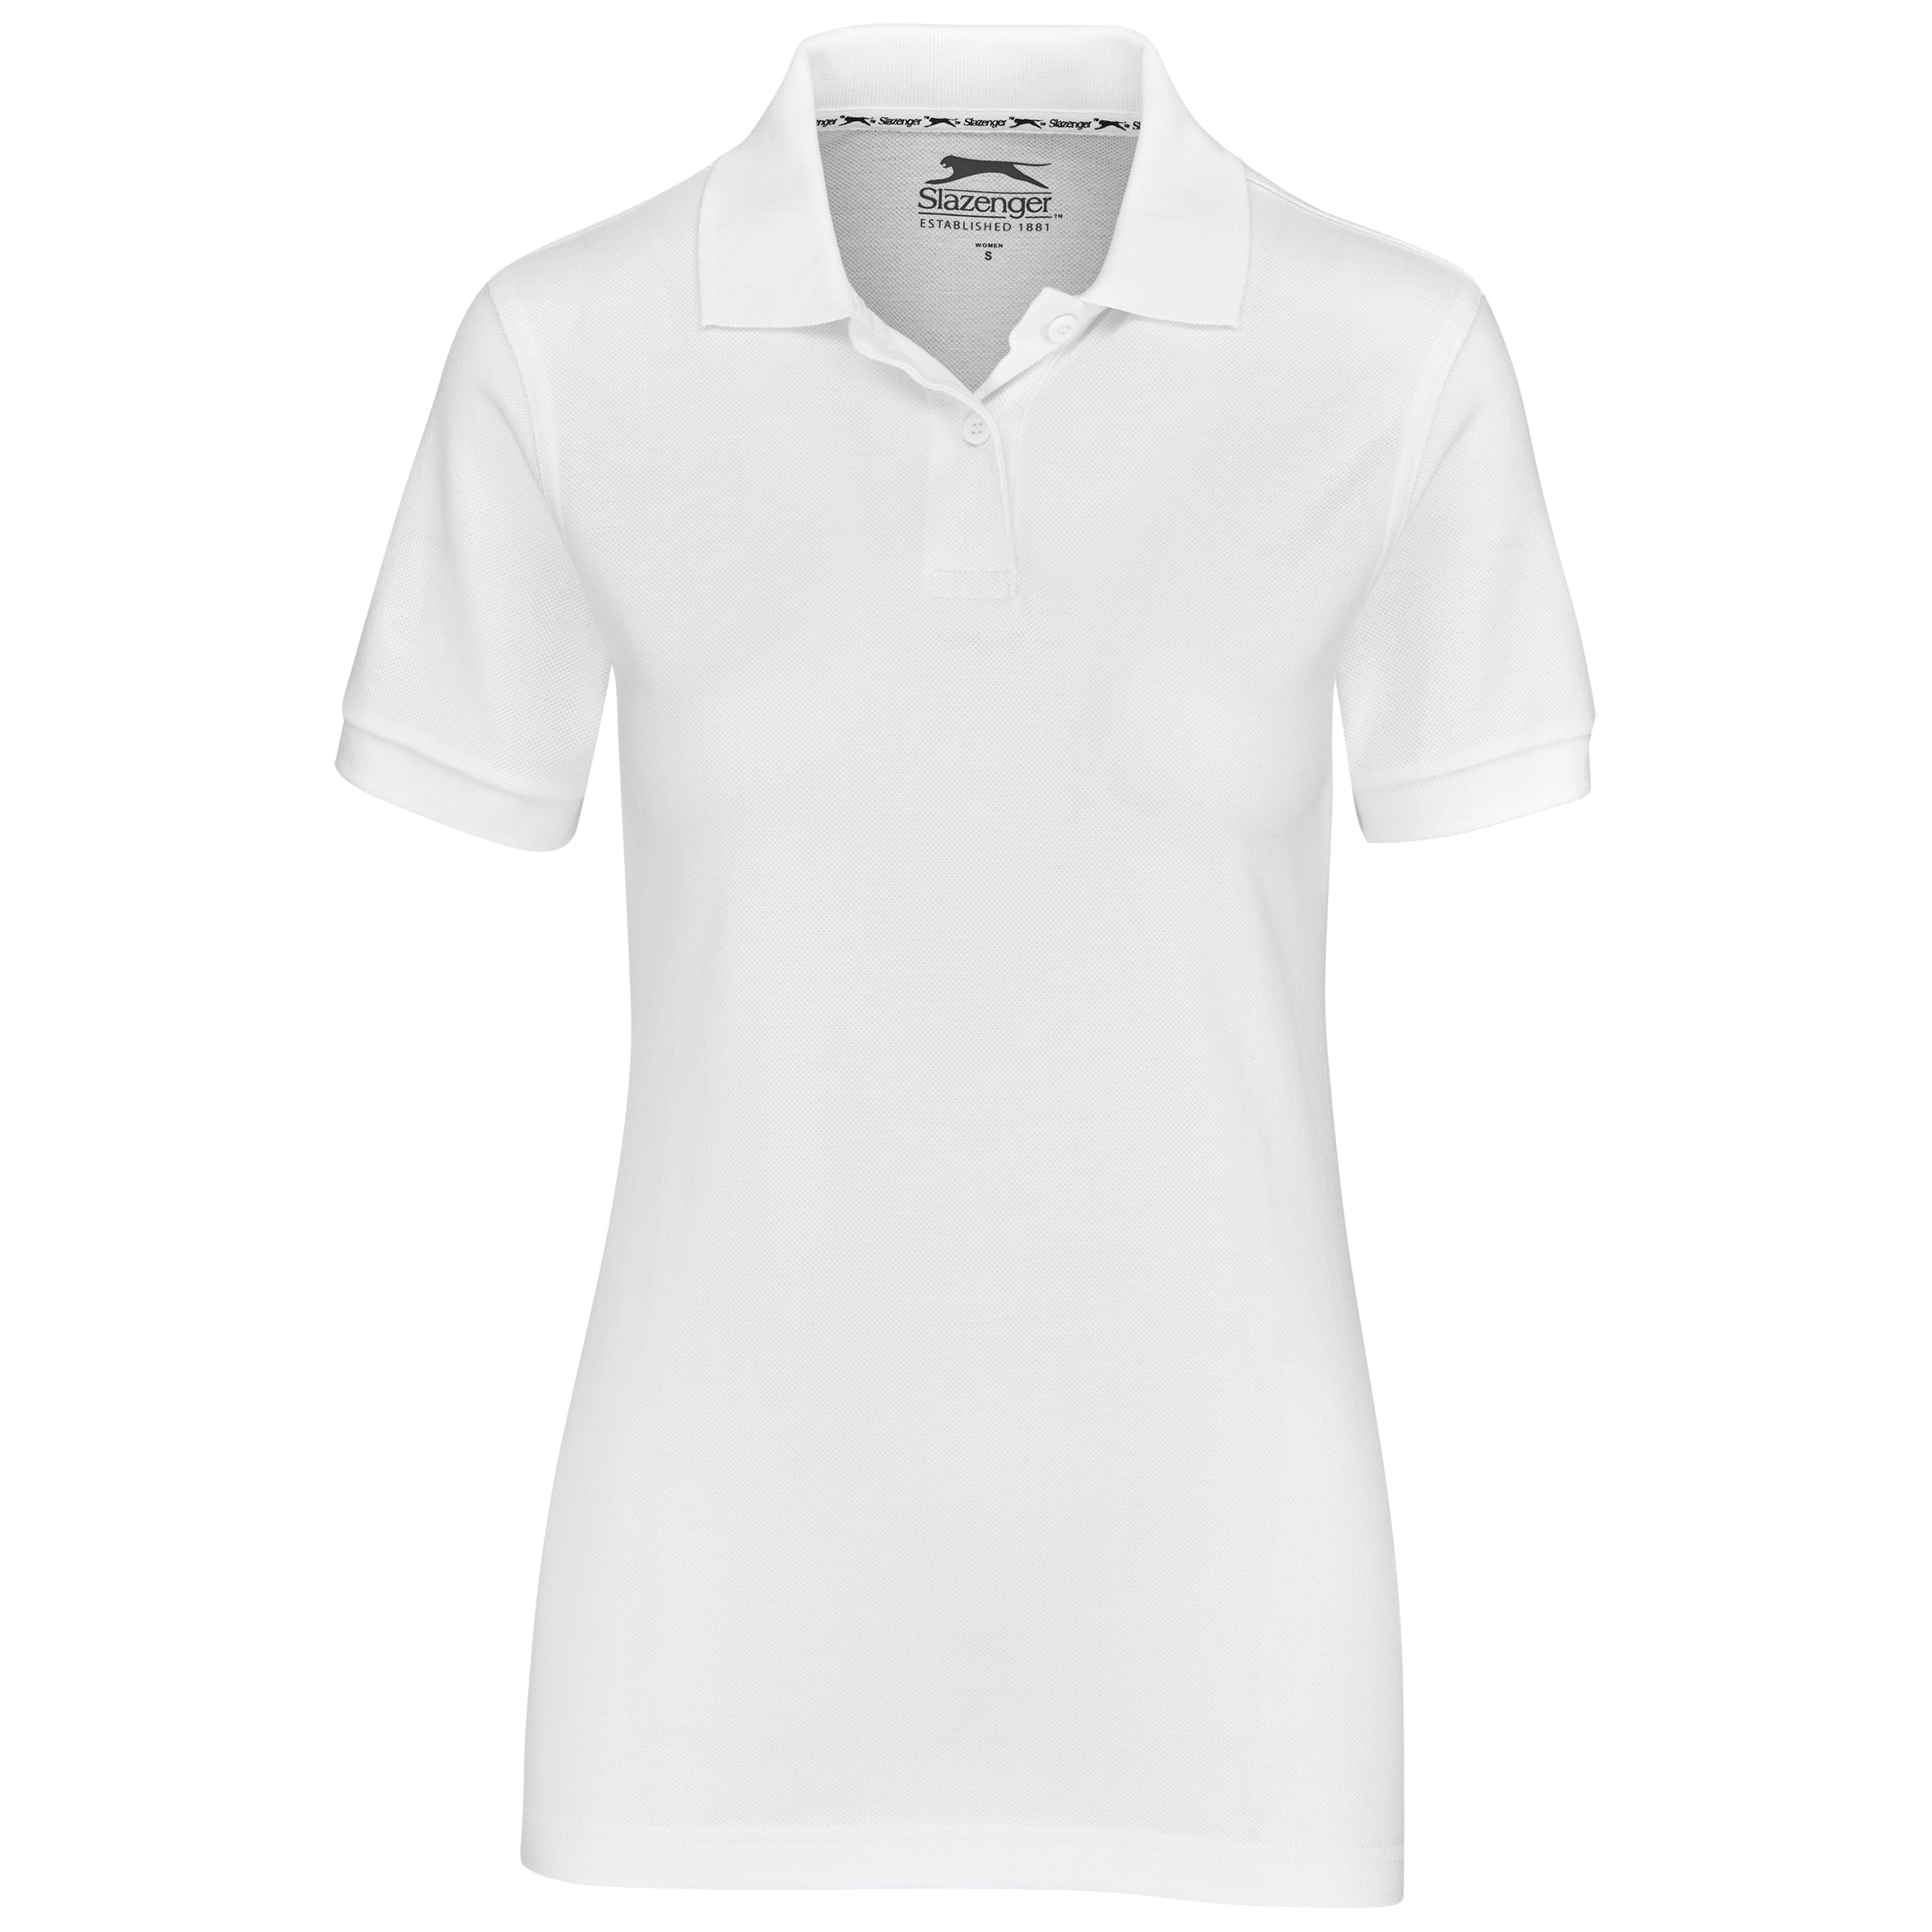 Ladies Crest Golf Shirt-